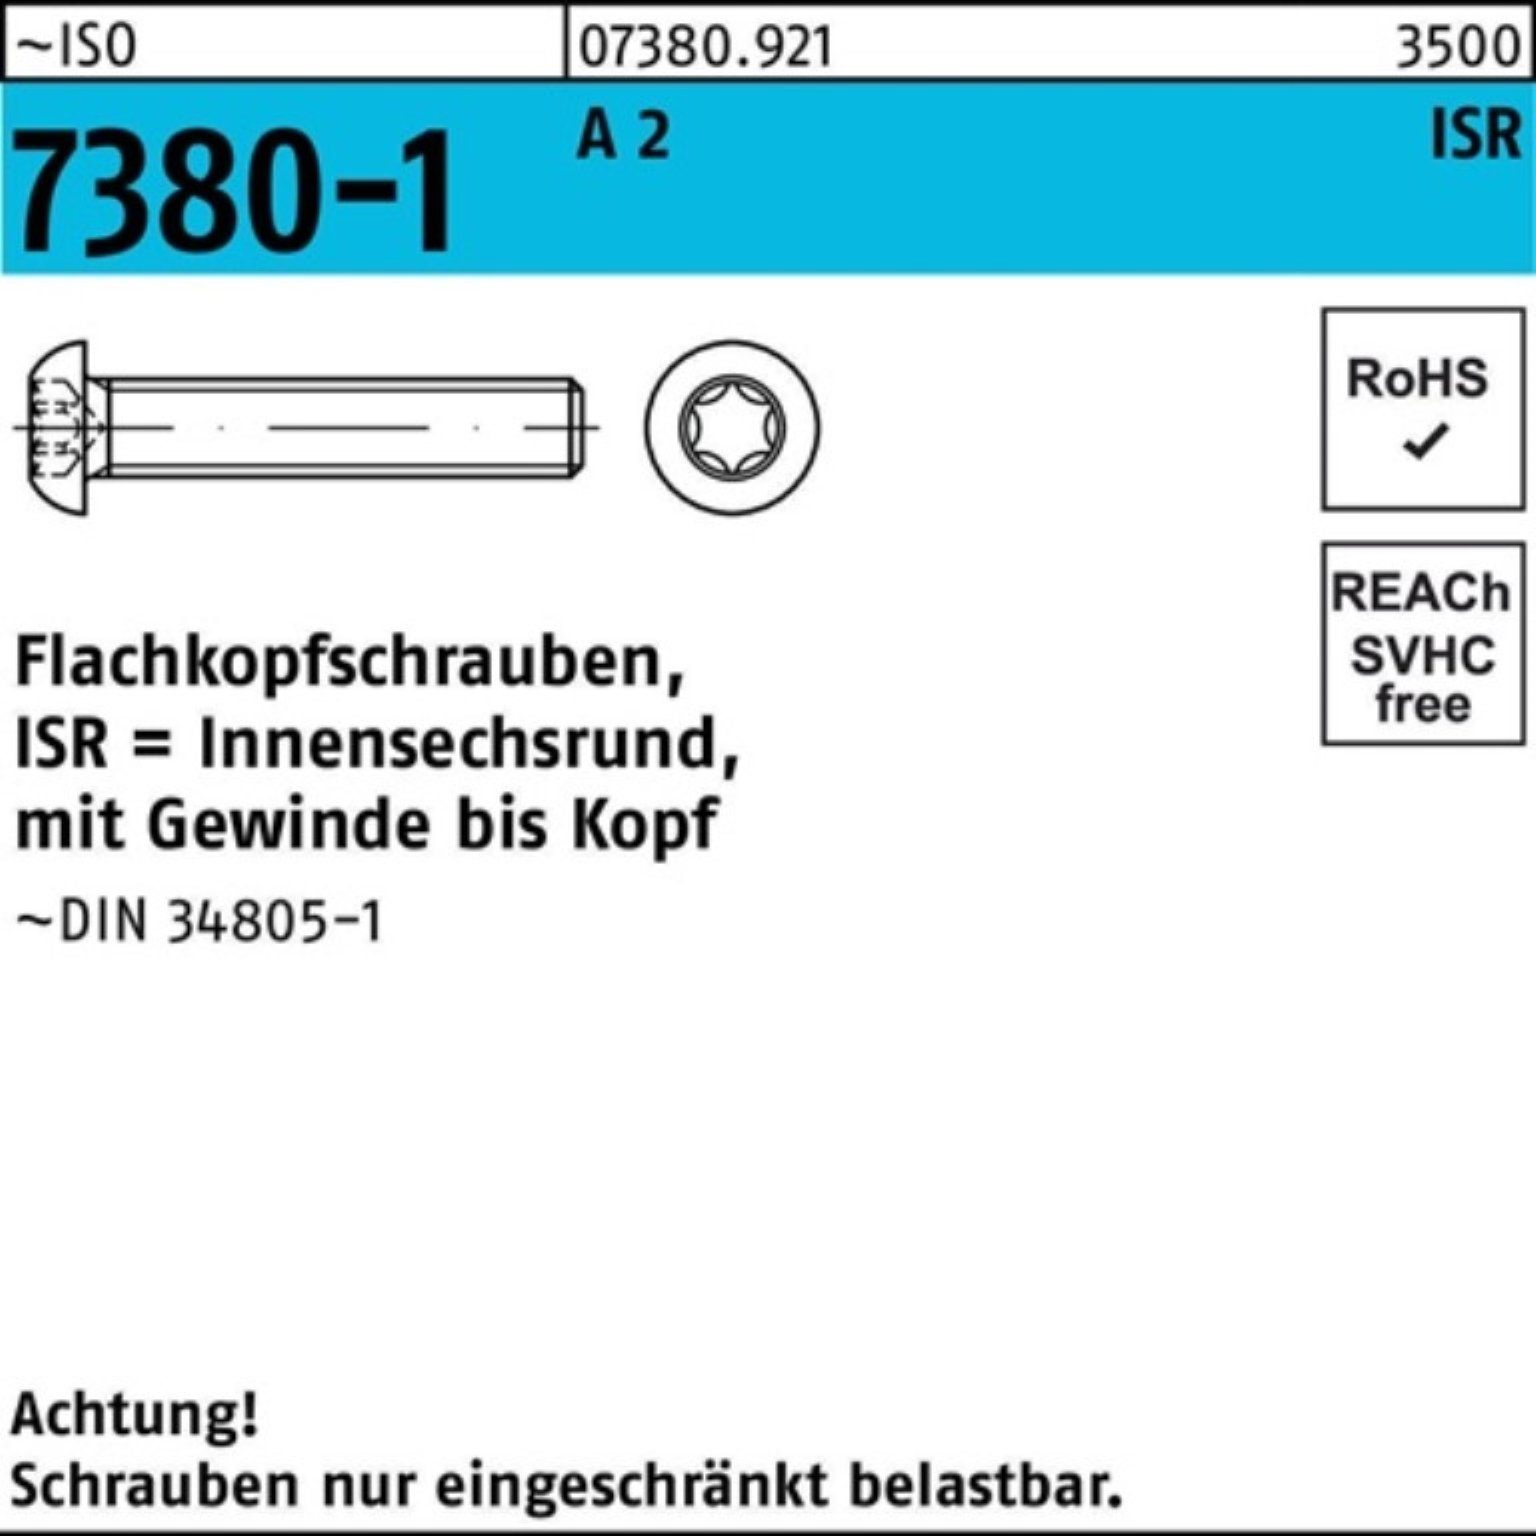 A 12-T30 2 Flachkopfschraube 7380-1 Stü M6x Reyher Pack 500er Schraube VG 500 ISR ISO